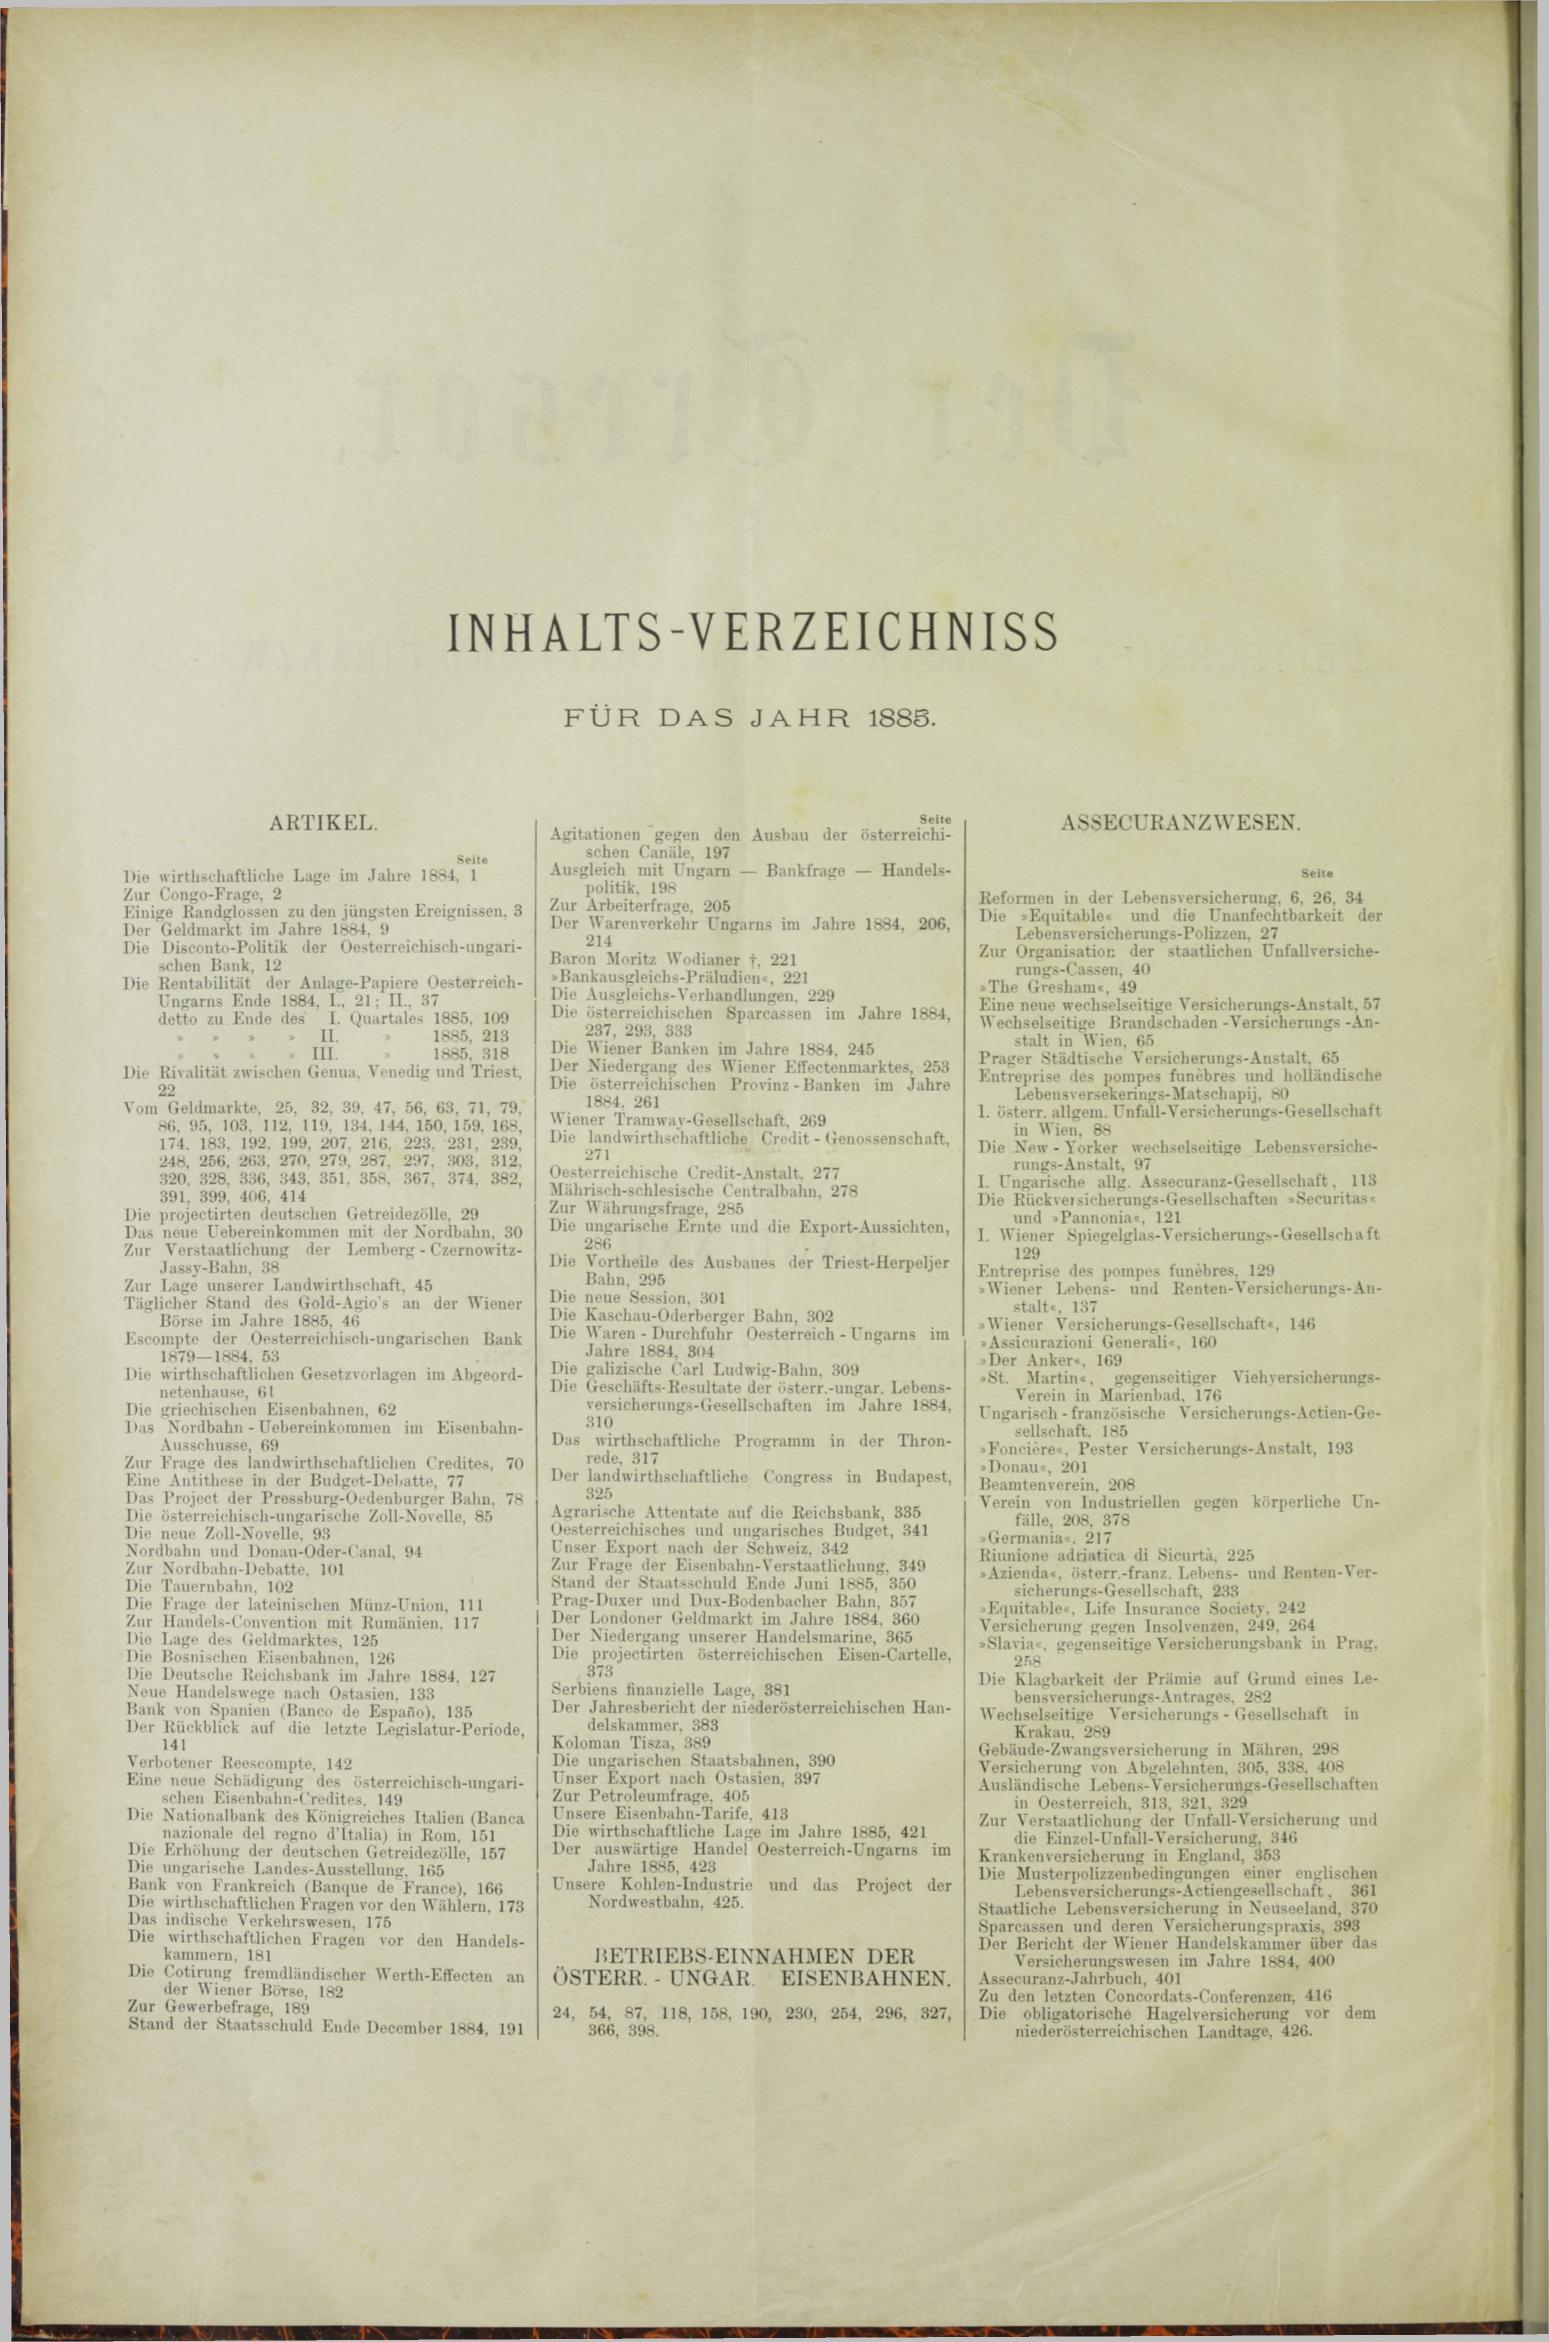 Der Tresor 14.05.1885 - Seite 10